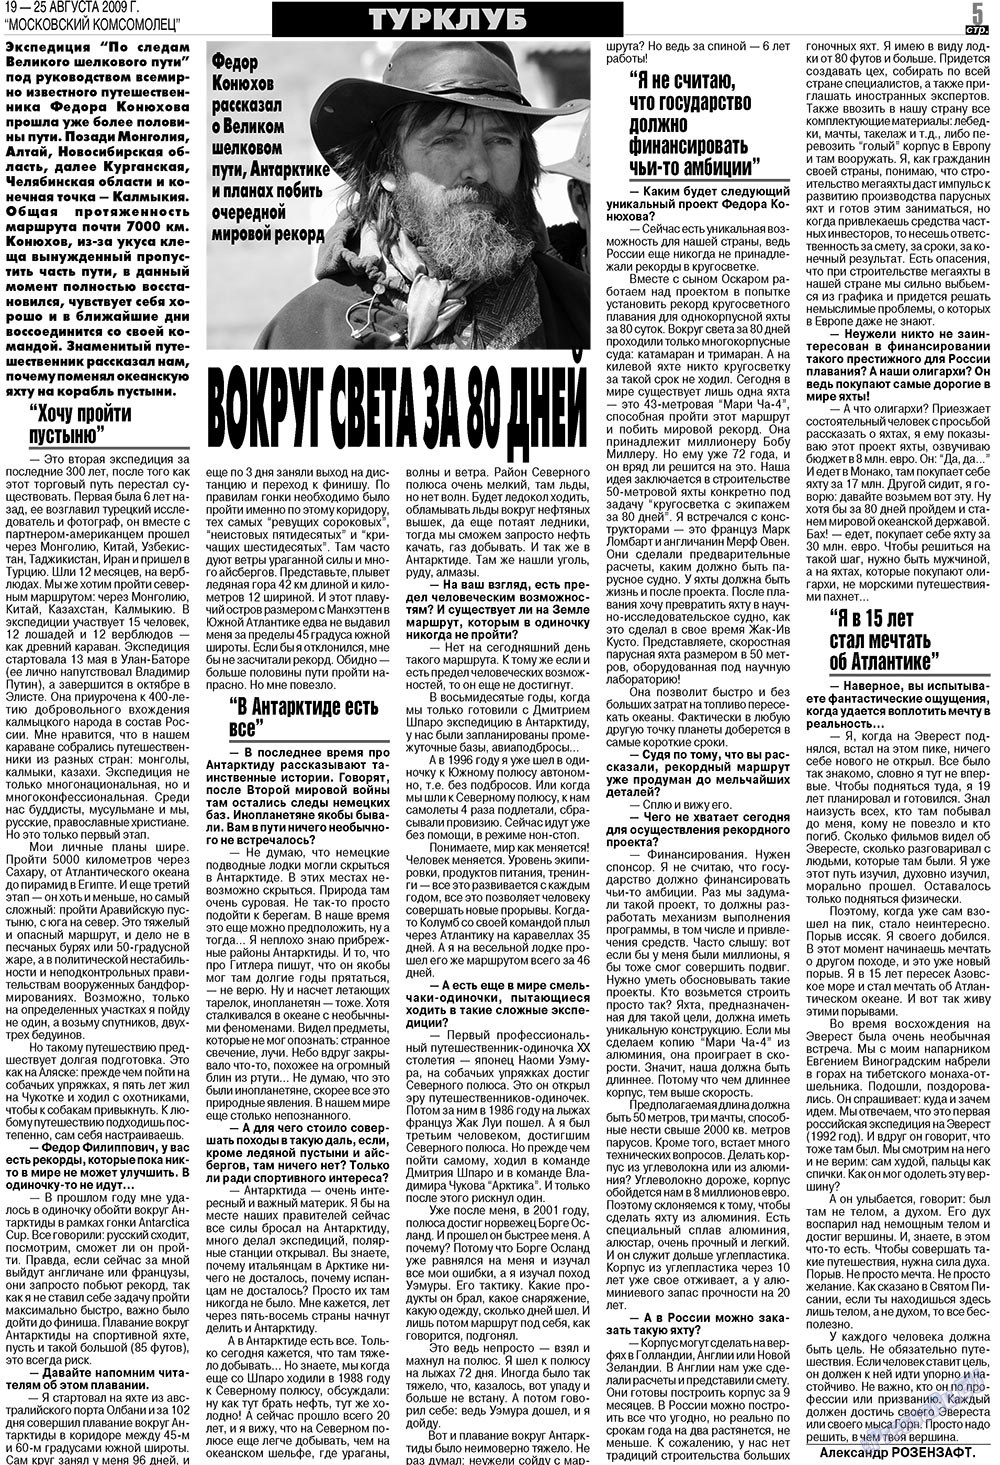 МК Испания, газета. 2009 №34 стр.5